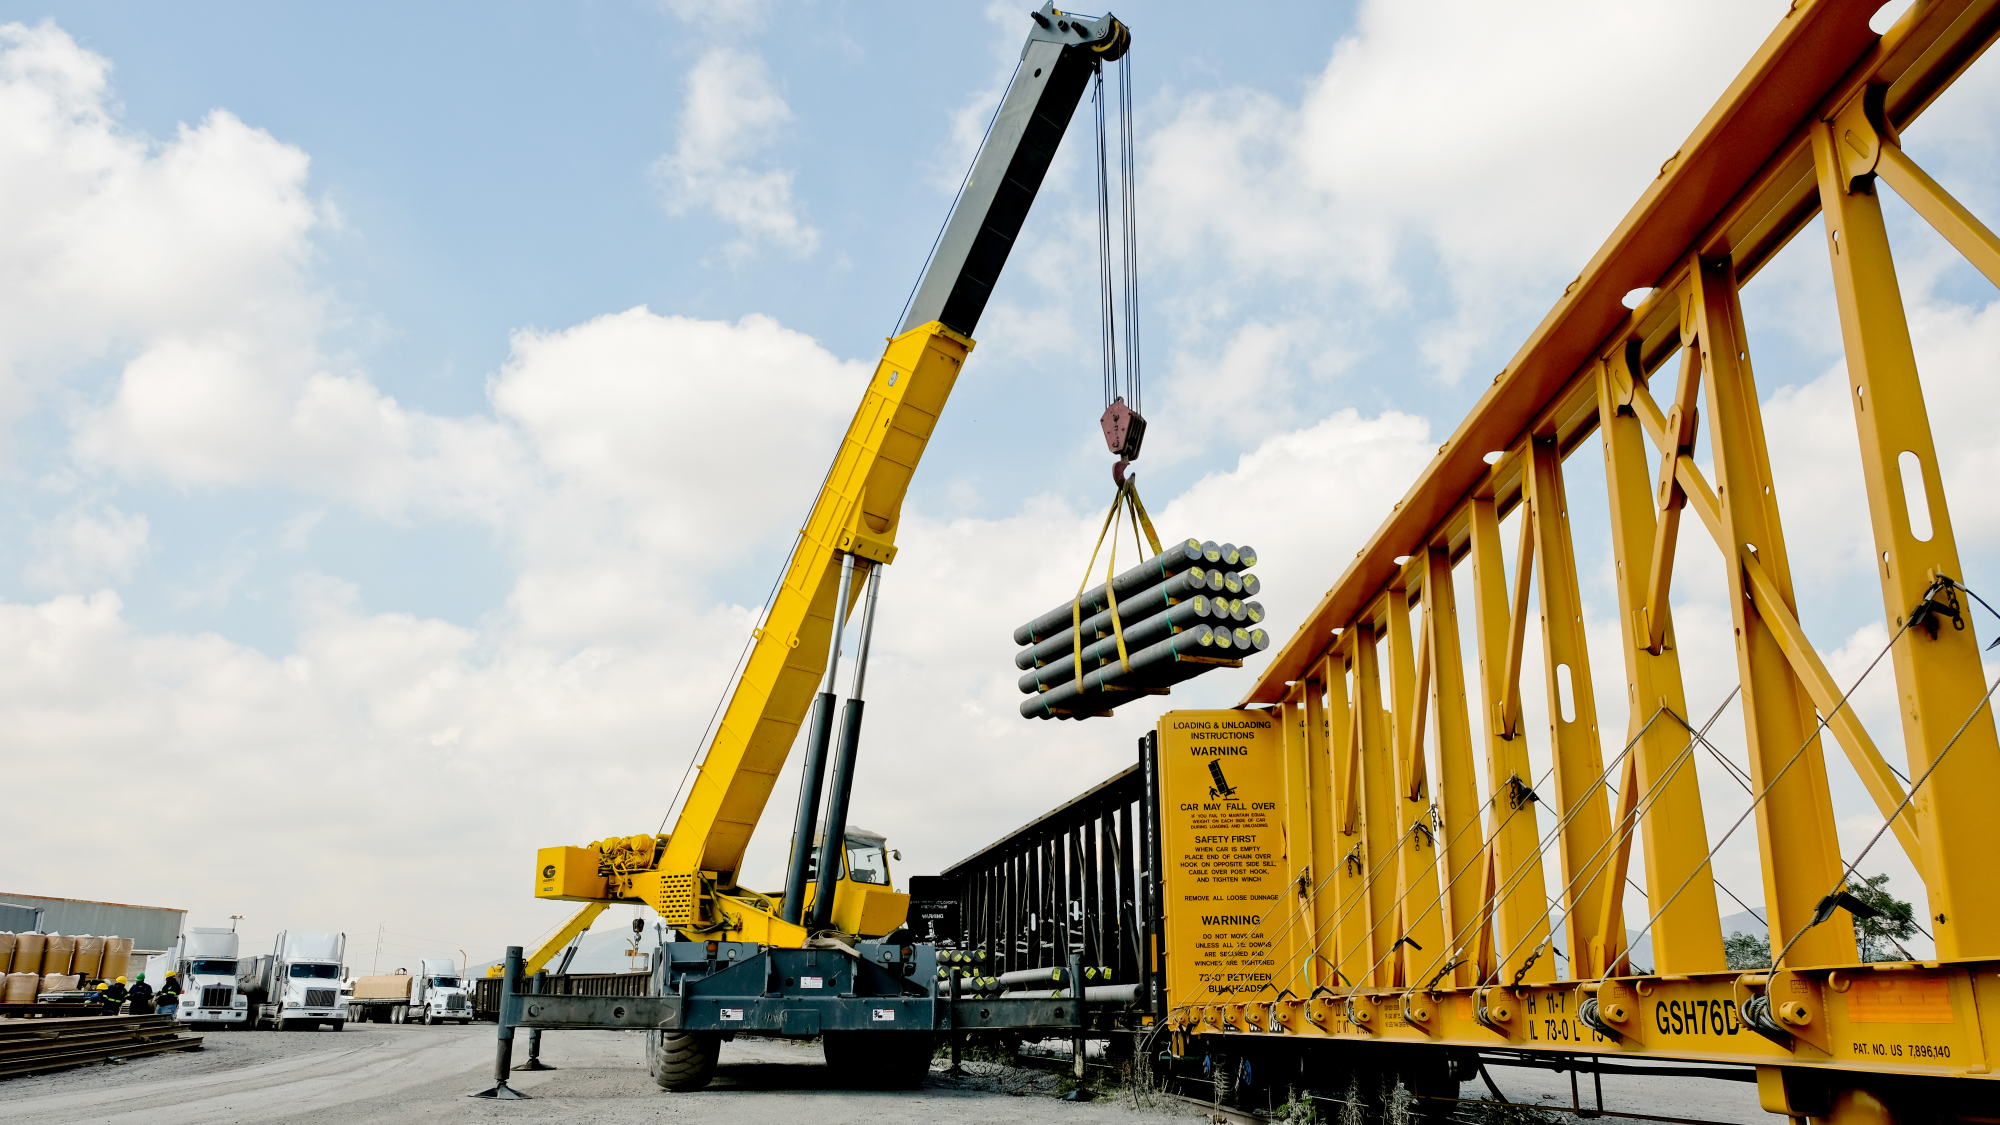 Grúas hidráulicas para maniobrar material pesado con capacidades de hasta 90 toneladas desde o hacia unidades ferroviarias, tractocamiones o bodegas